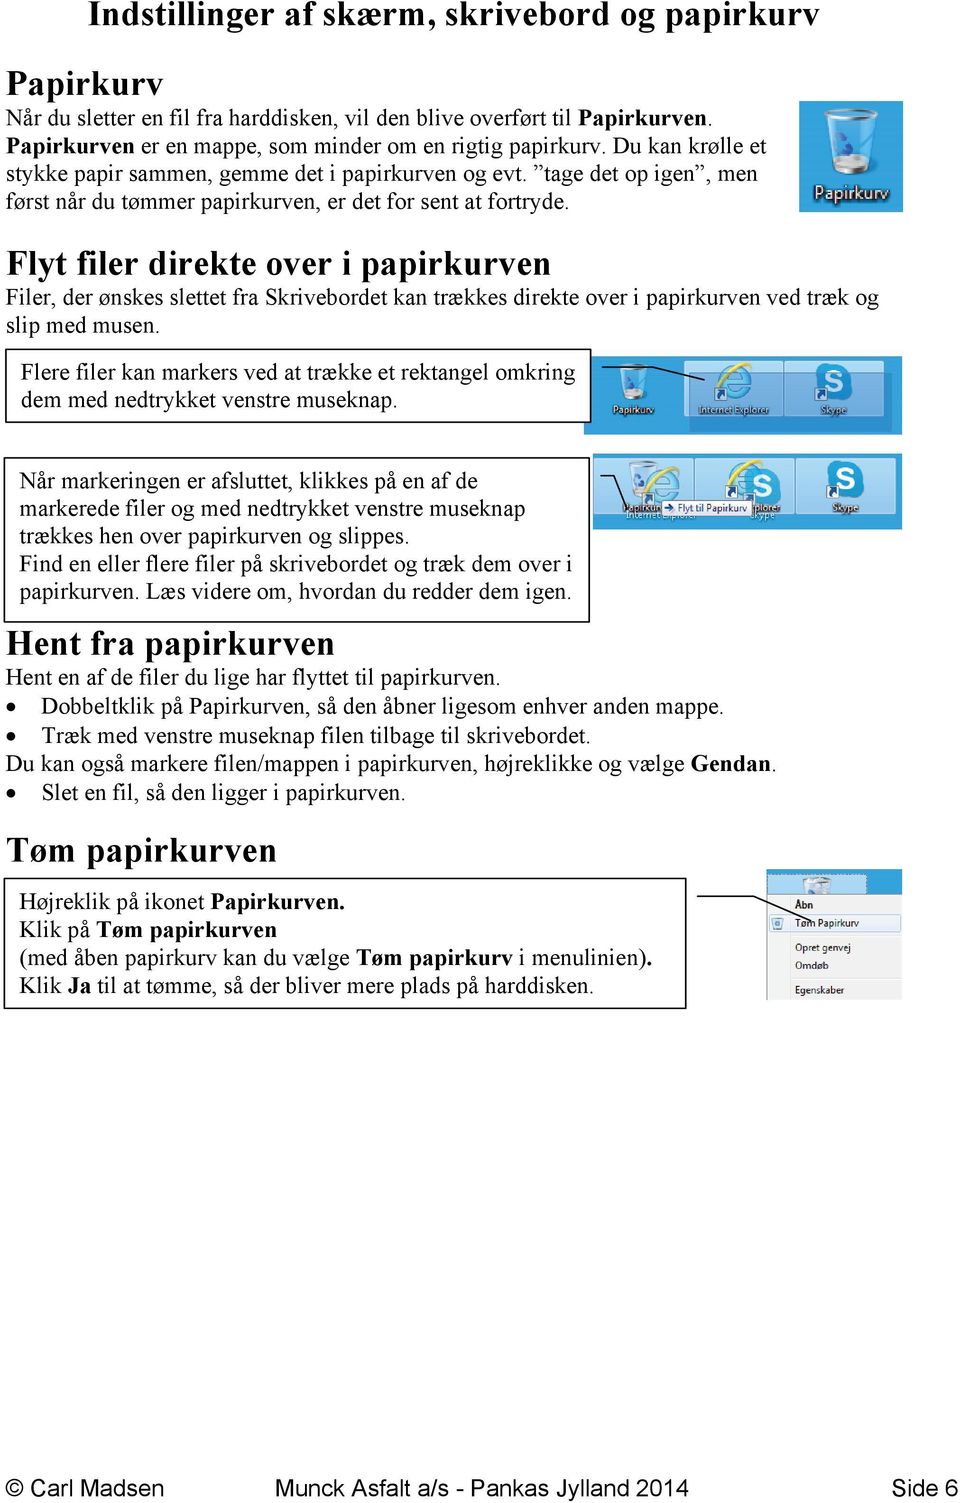 Indstillinger af skærm, skrivebord og papirkurv - PDF Gratis download